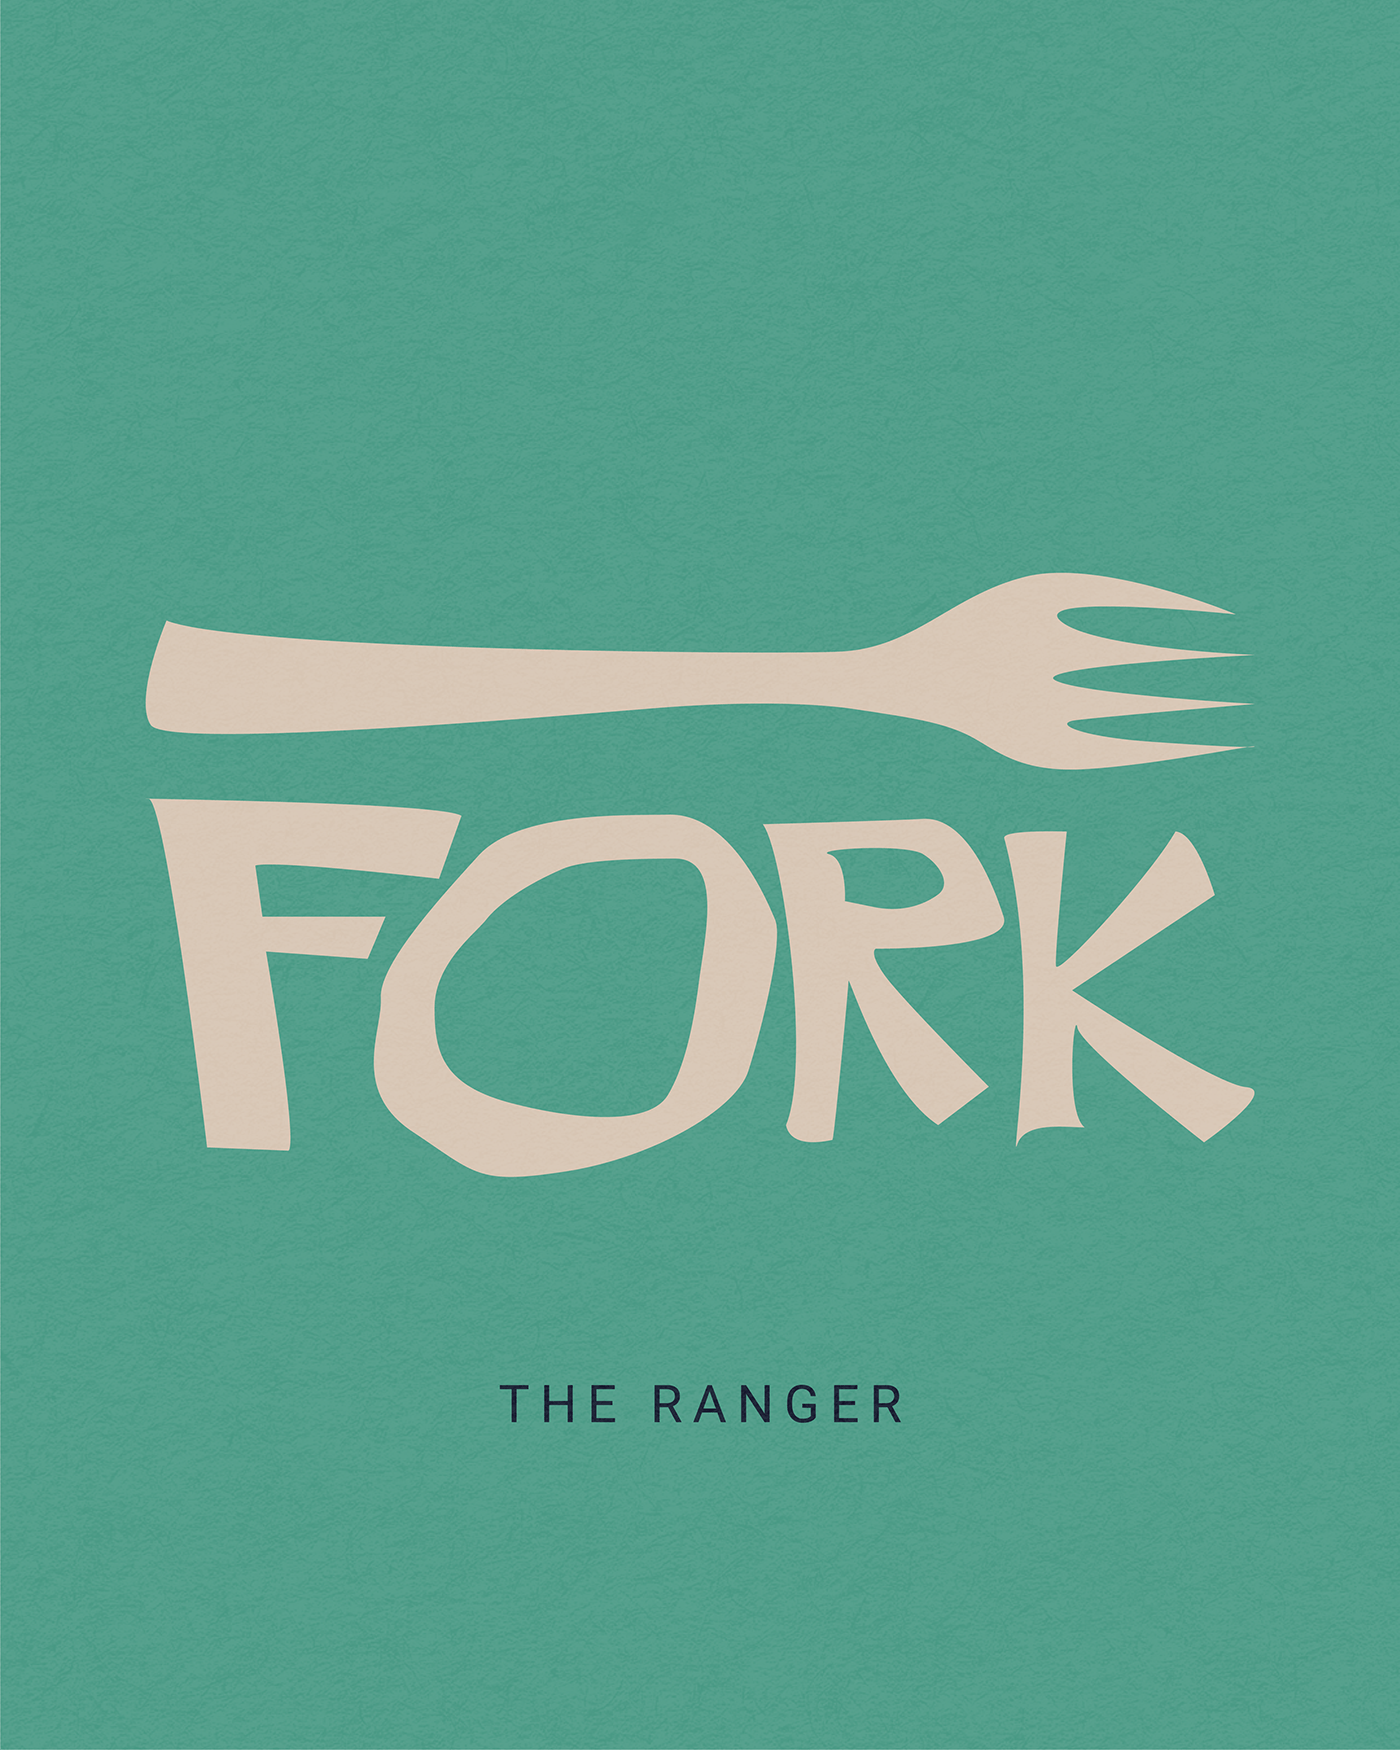 It's a fork.